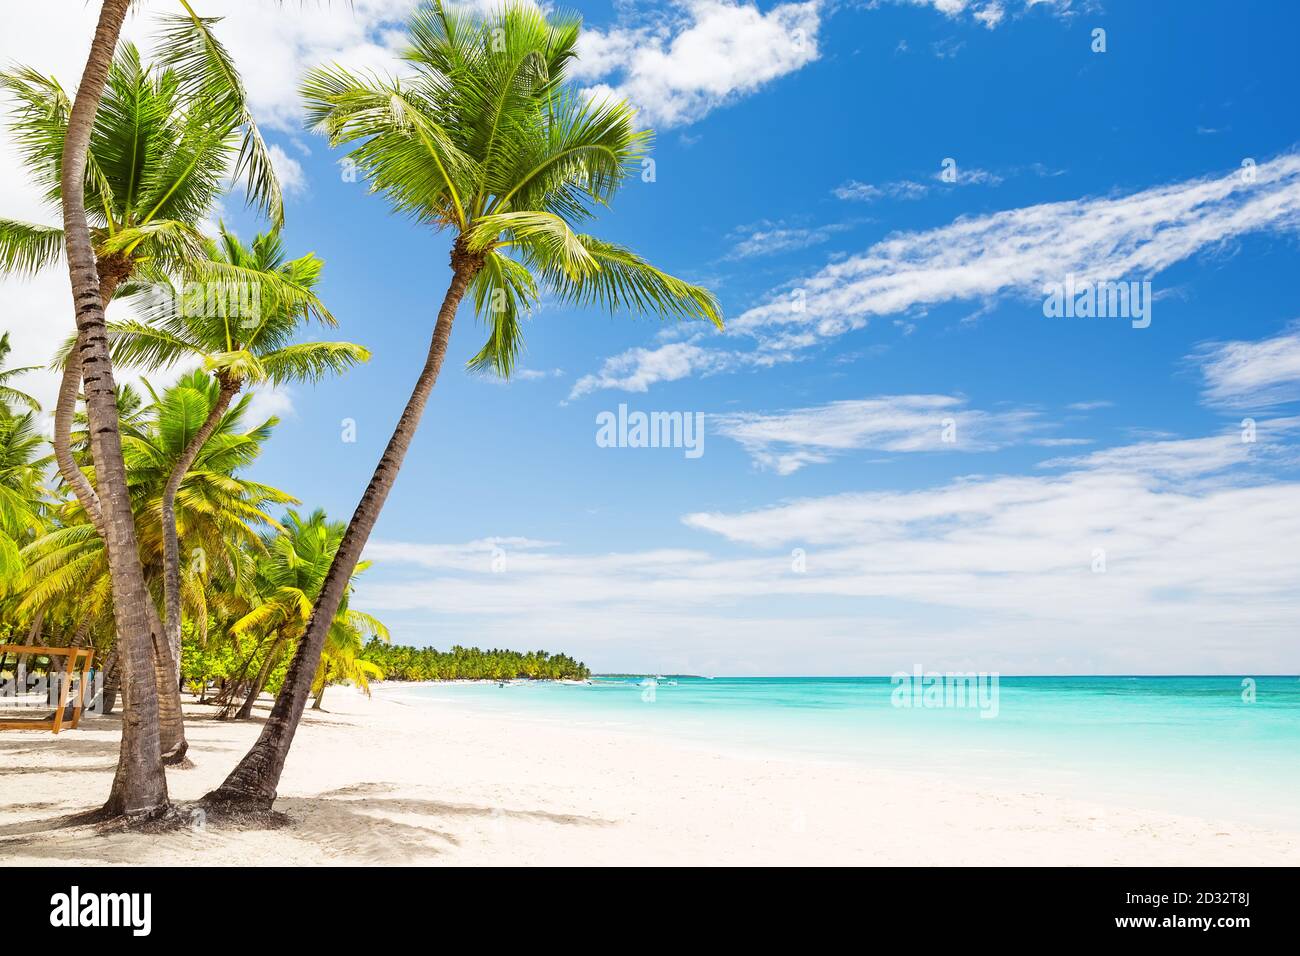 Palmeras de coco en la playa de arena blanca en Punta Cana, República Dominicana Foto de stock